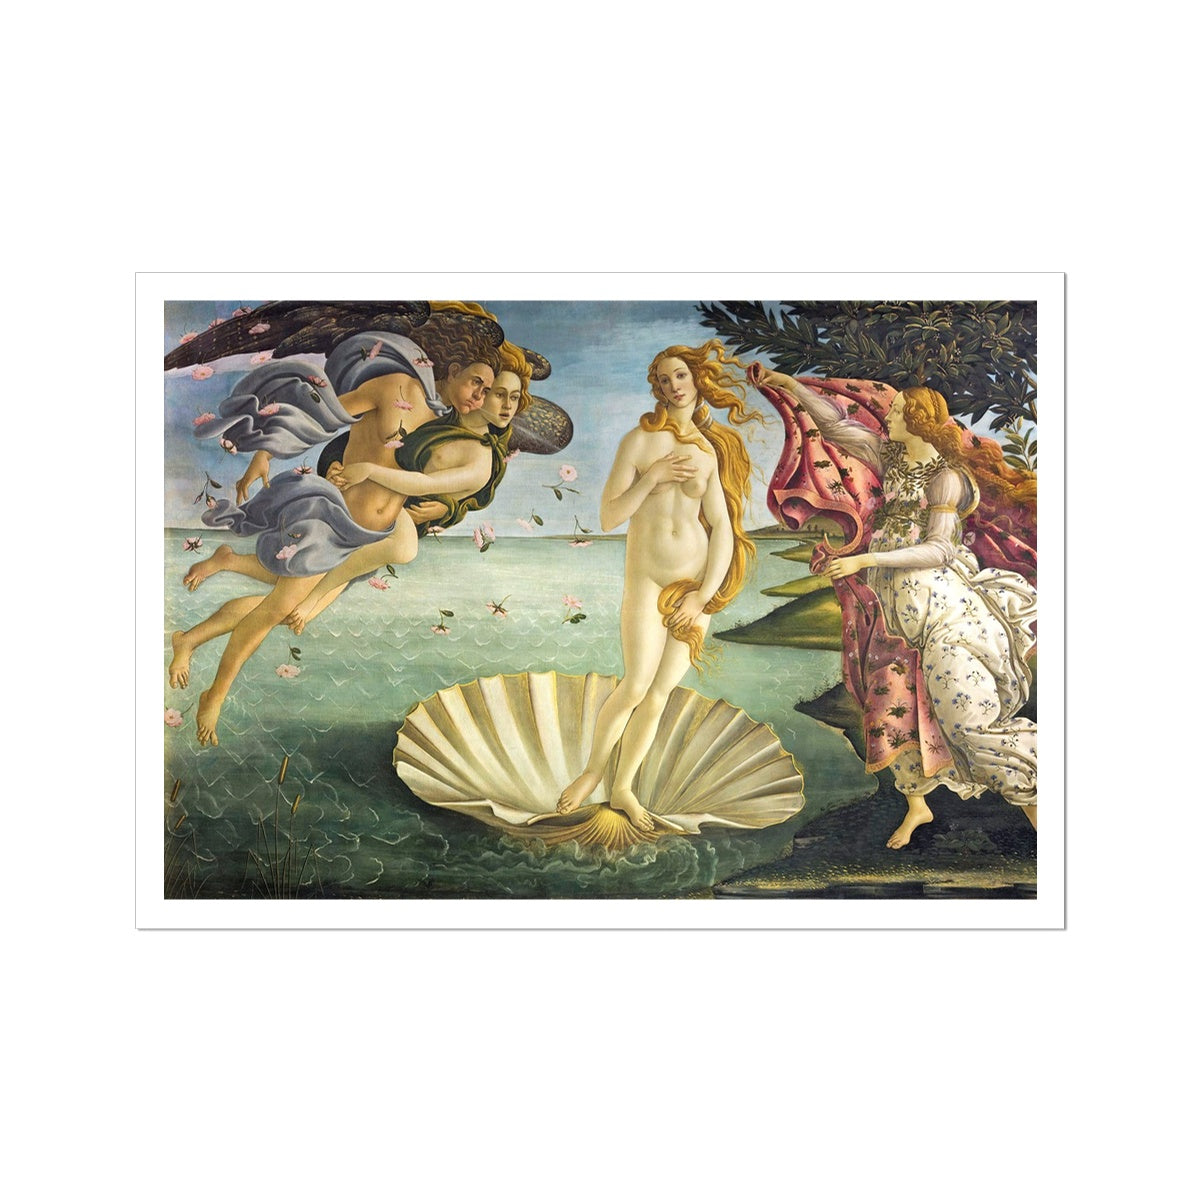 'Birth of Venus' by Sandro Botticelli. Open Edition Fine Art Print. Historic Art